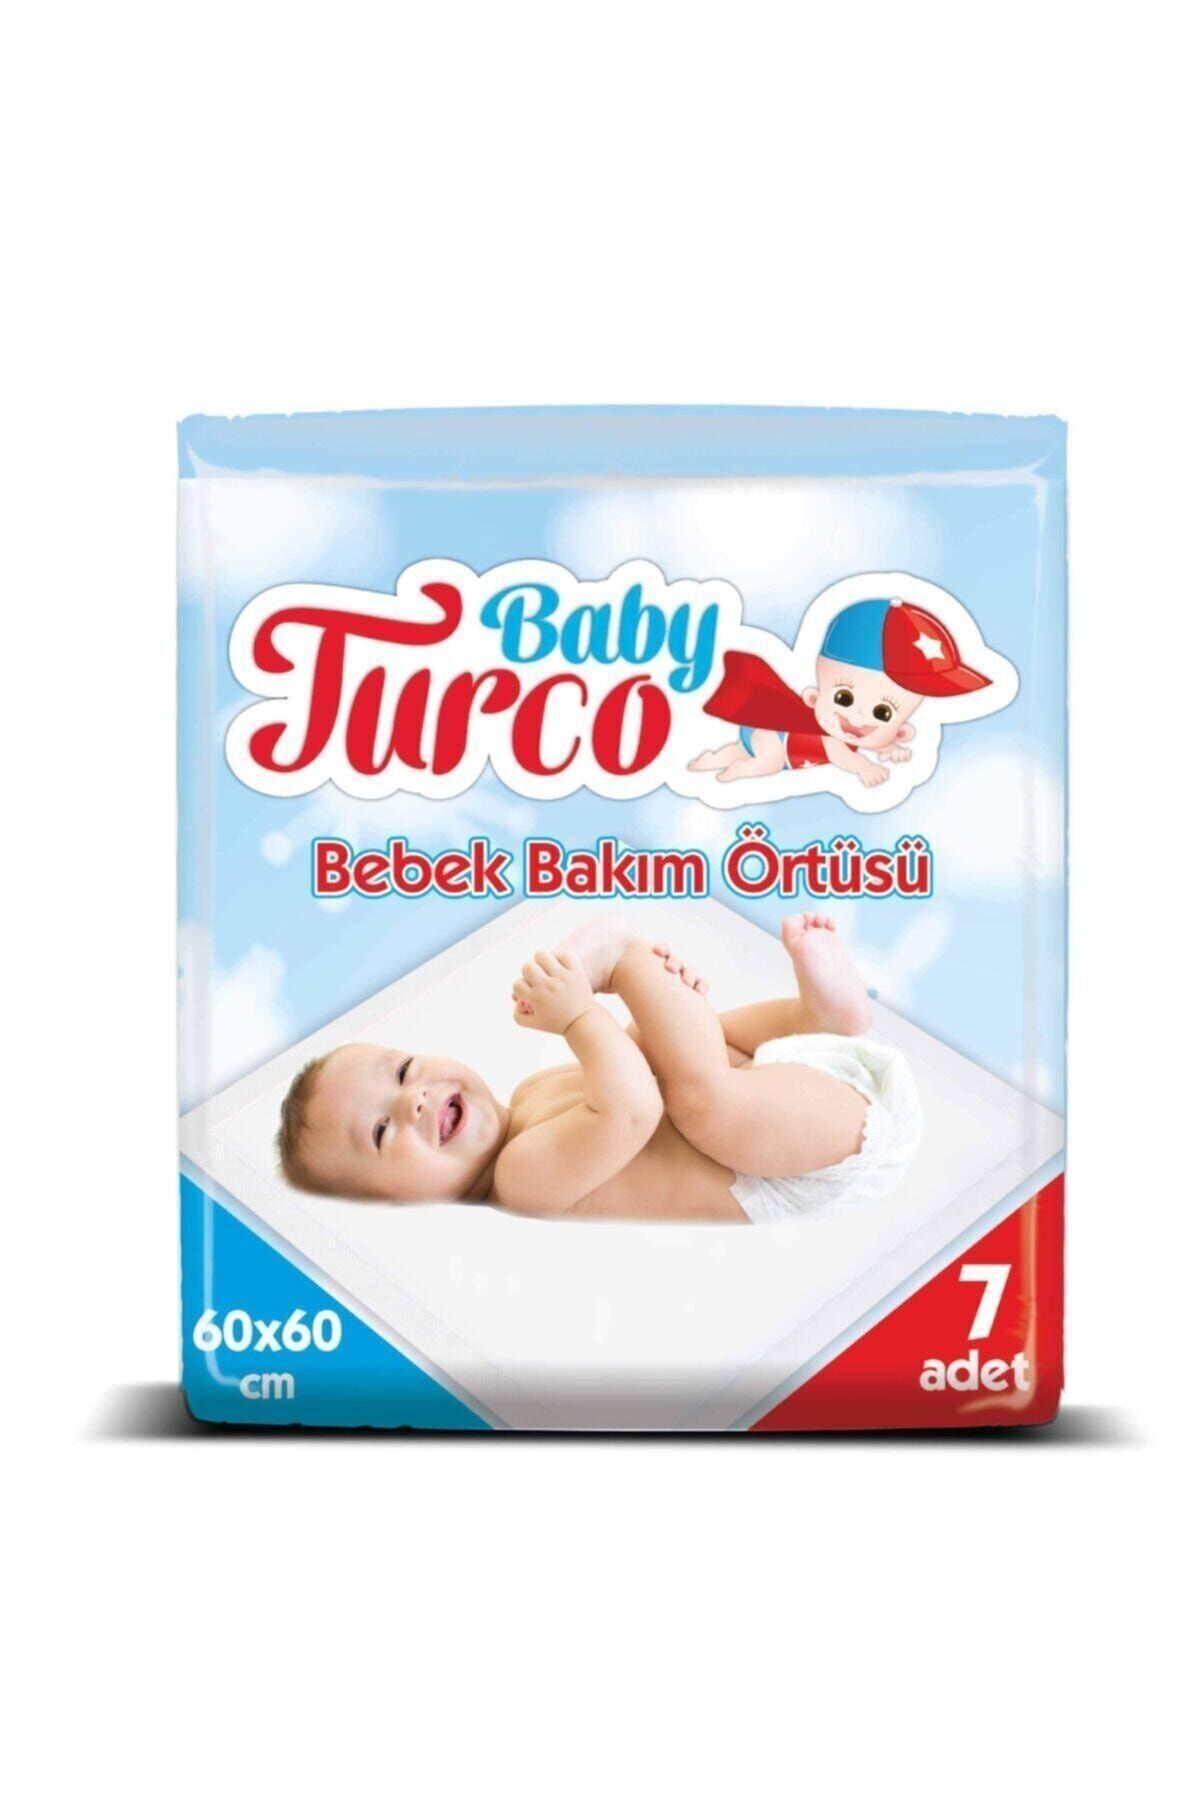 Baby Turco Bebek Bakım Örtüsü 7 Adet